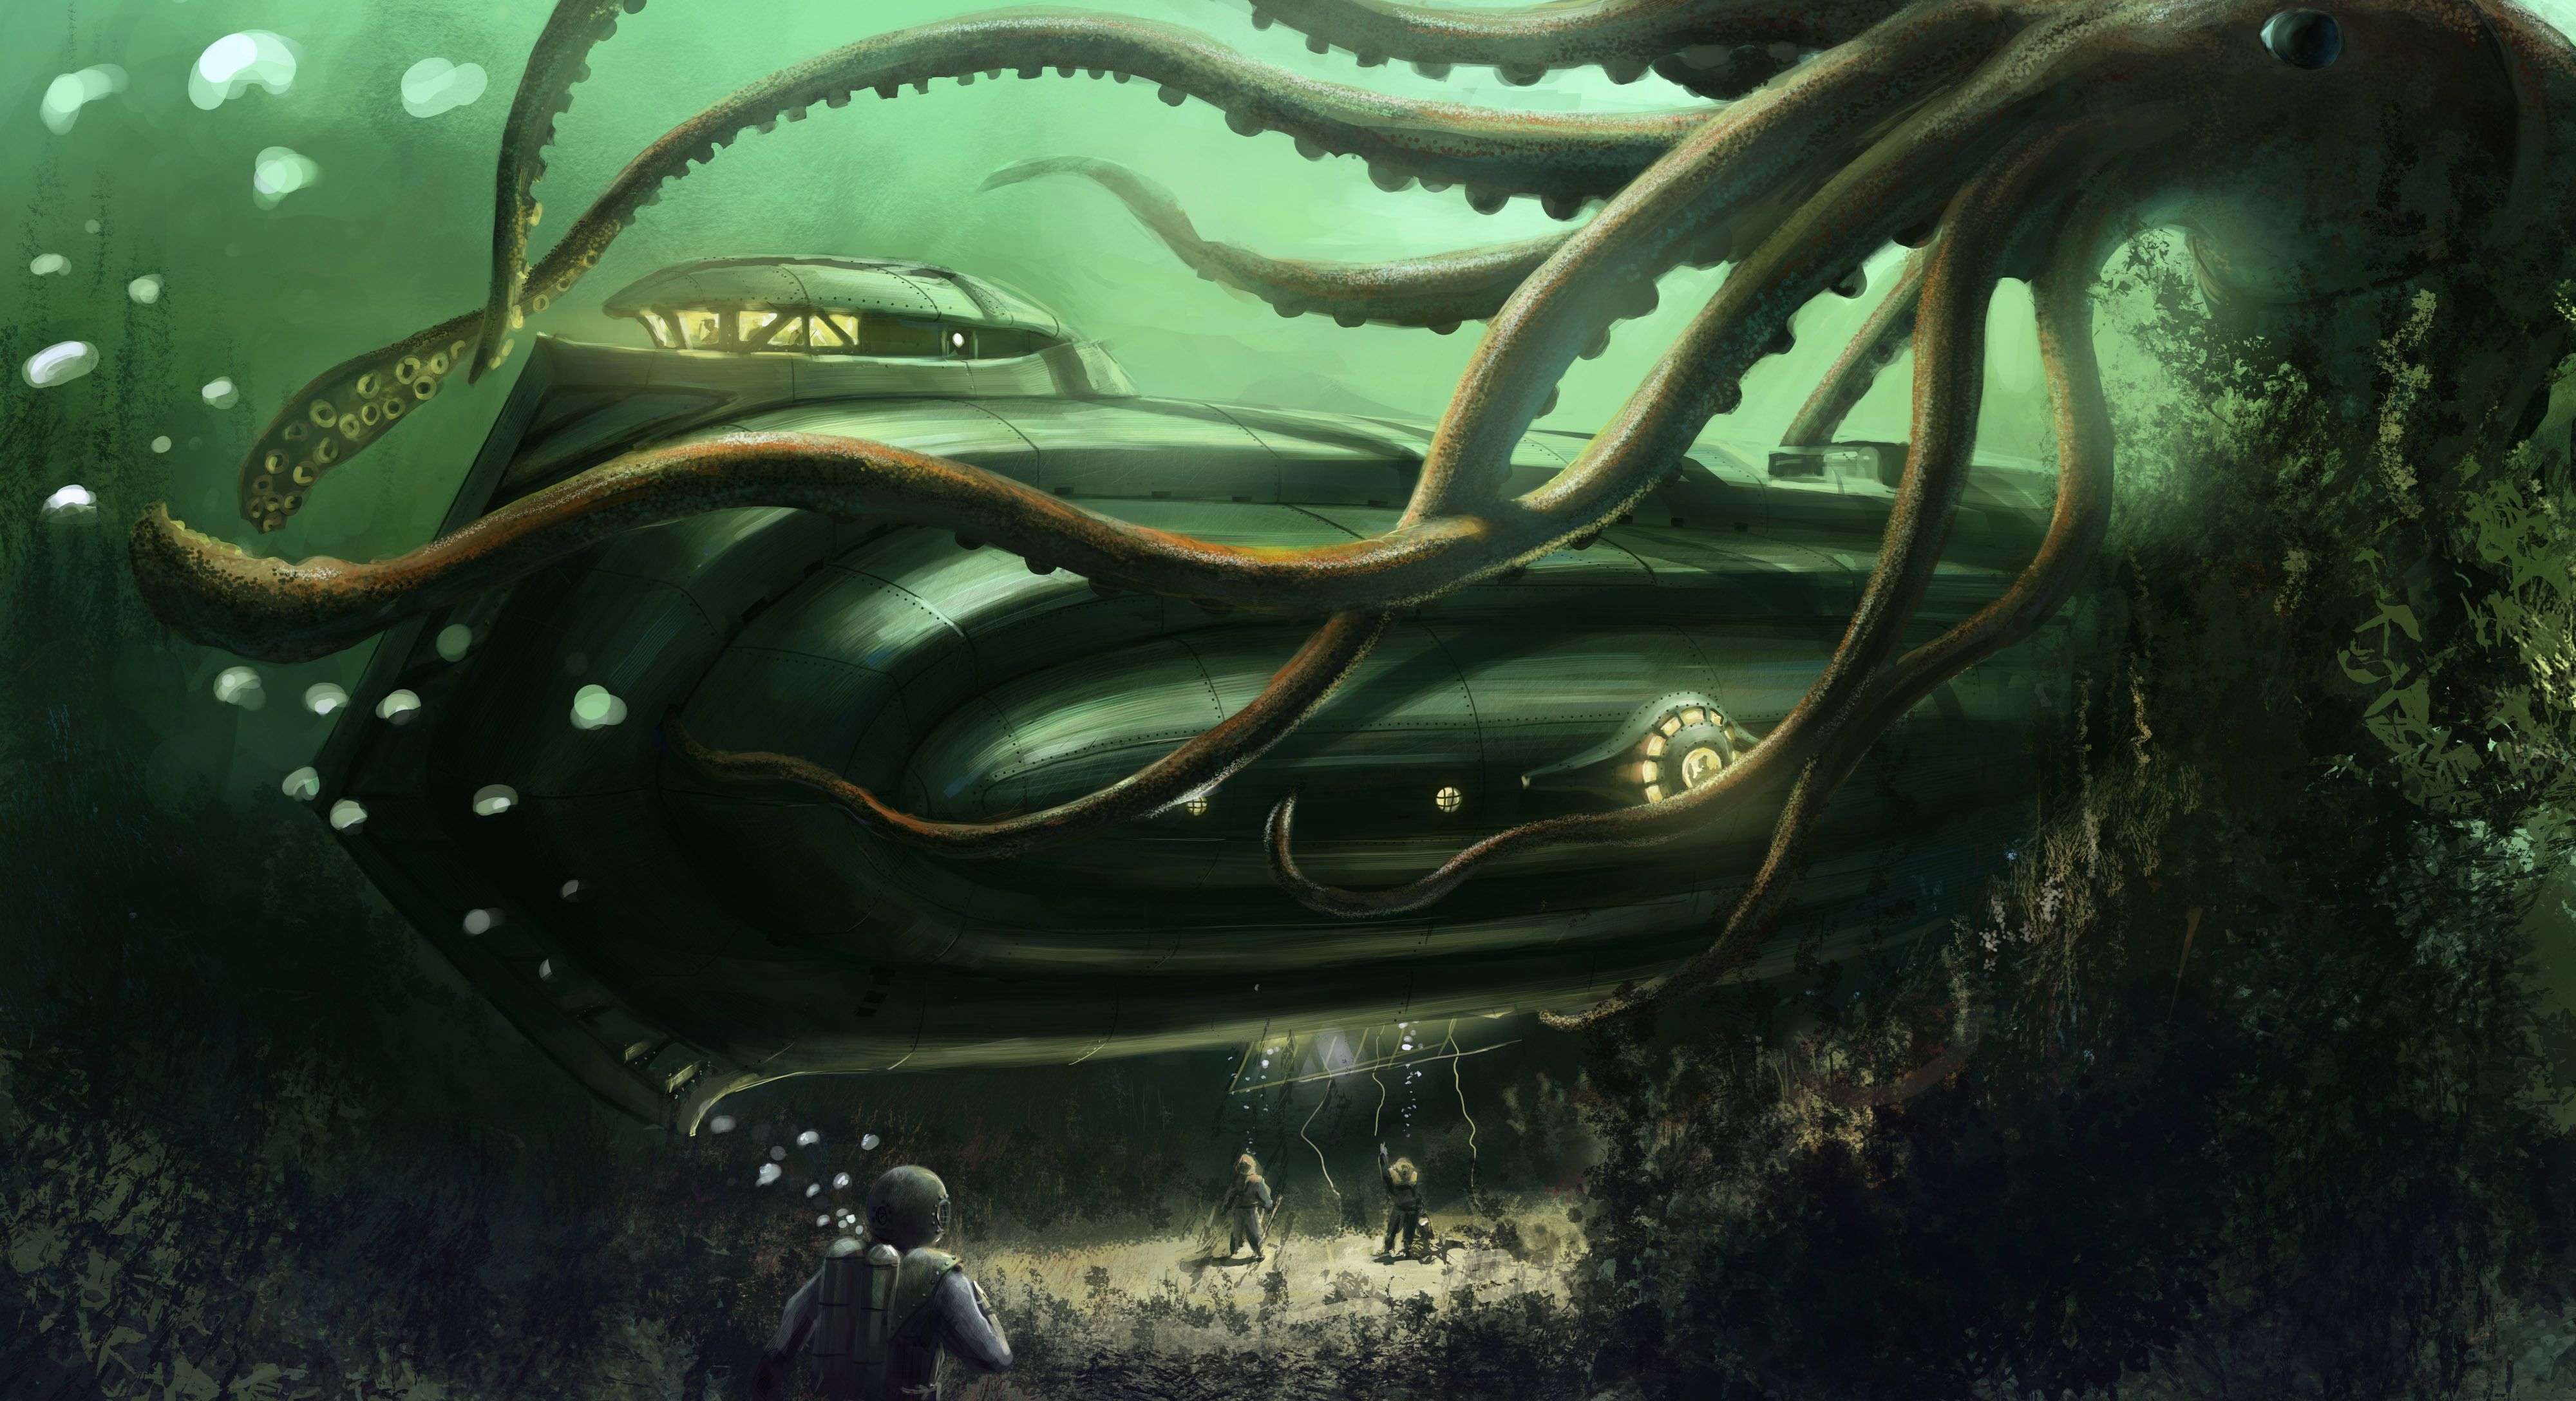 Fantasy Underwater HD Wallpaper | Background Image